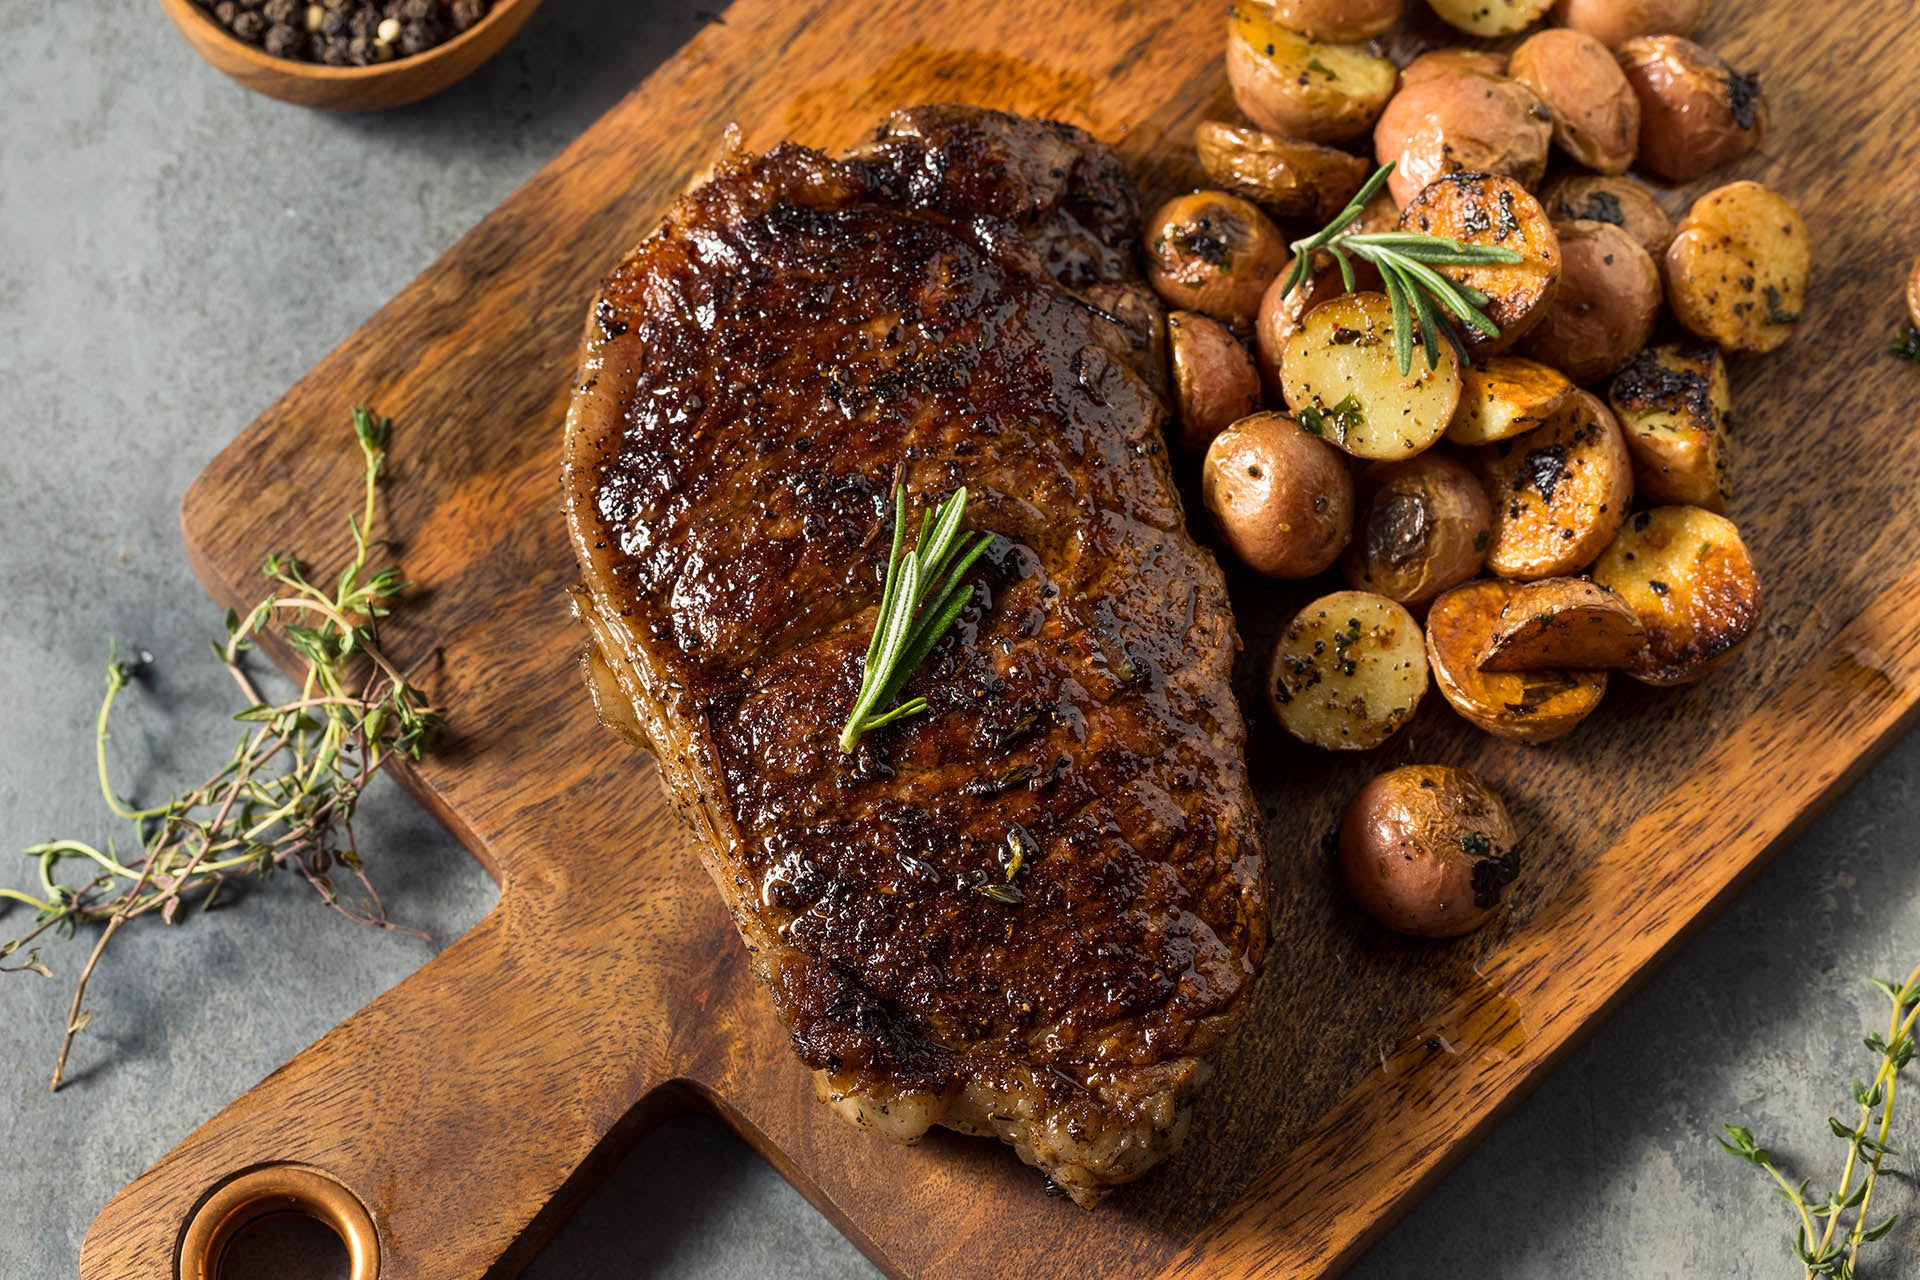 American Wagyu New York Strip Steak on a cutting board